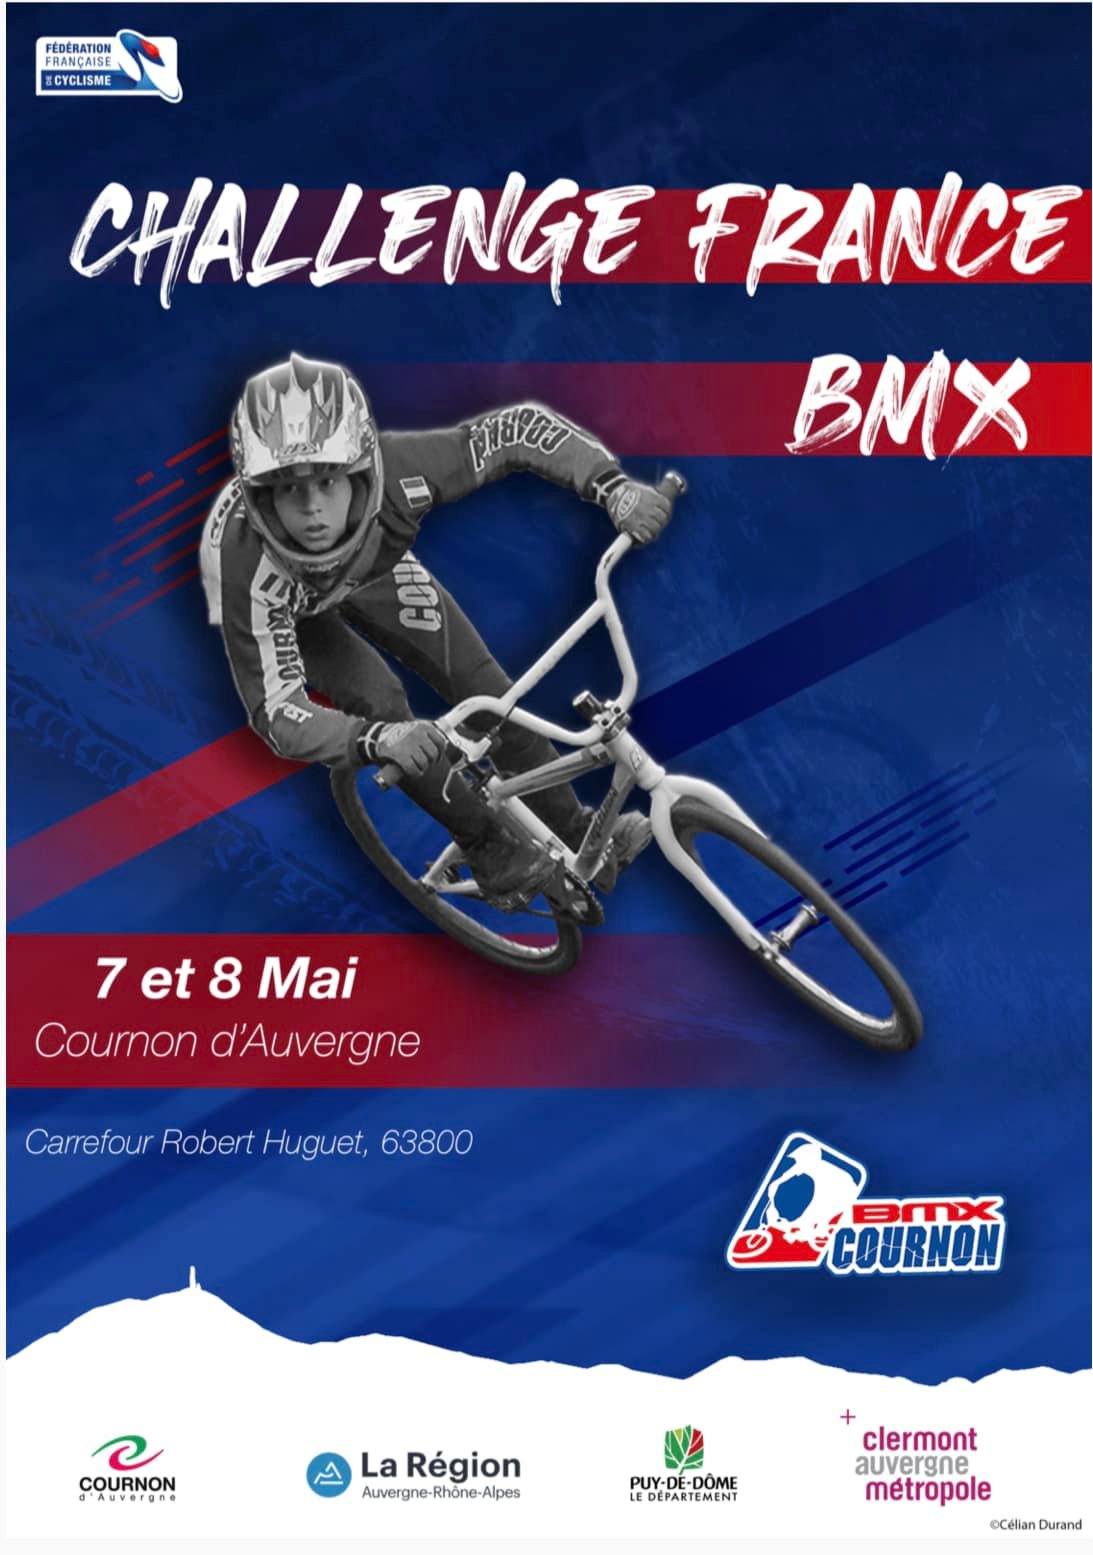 Challenge France Cournon D’Auvergne 7 et 8 mai 2022